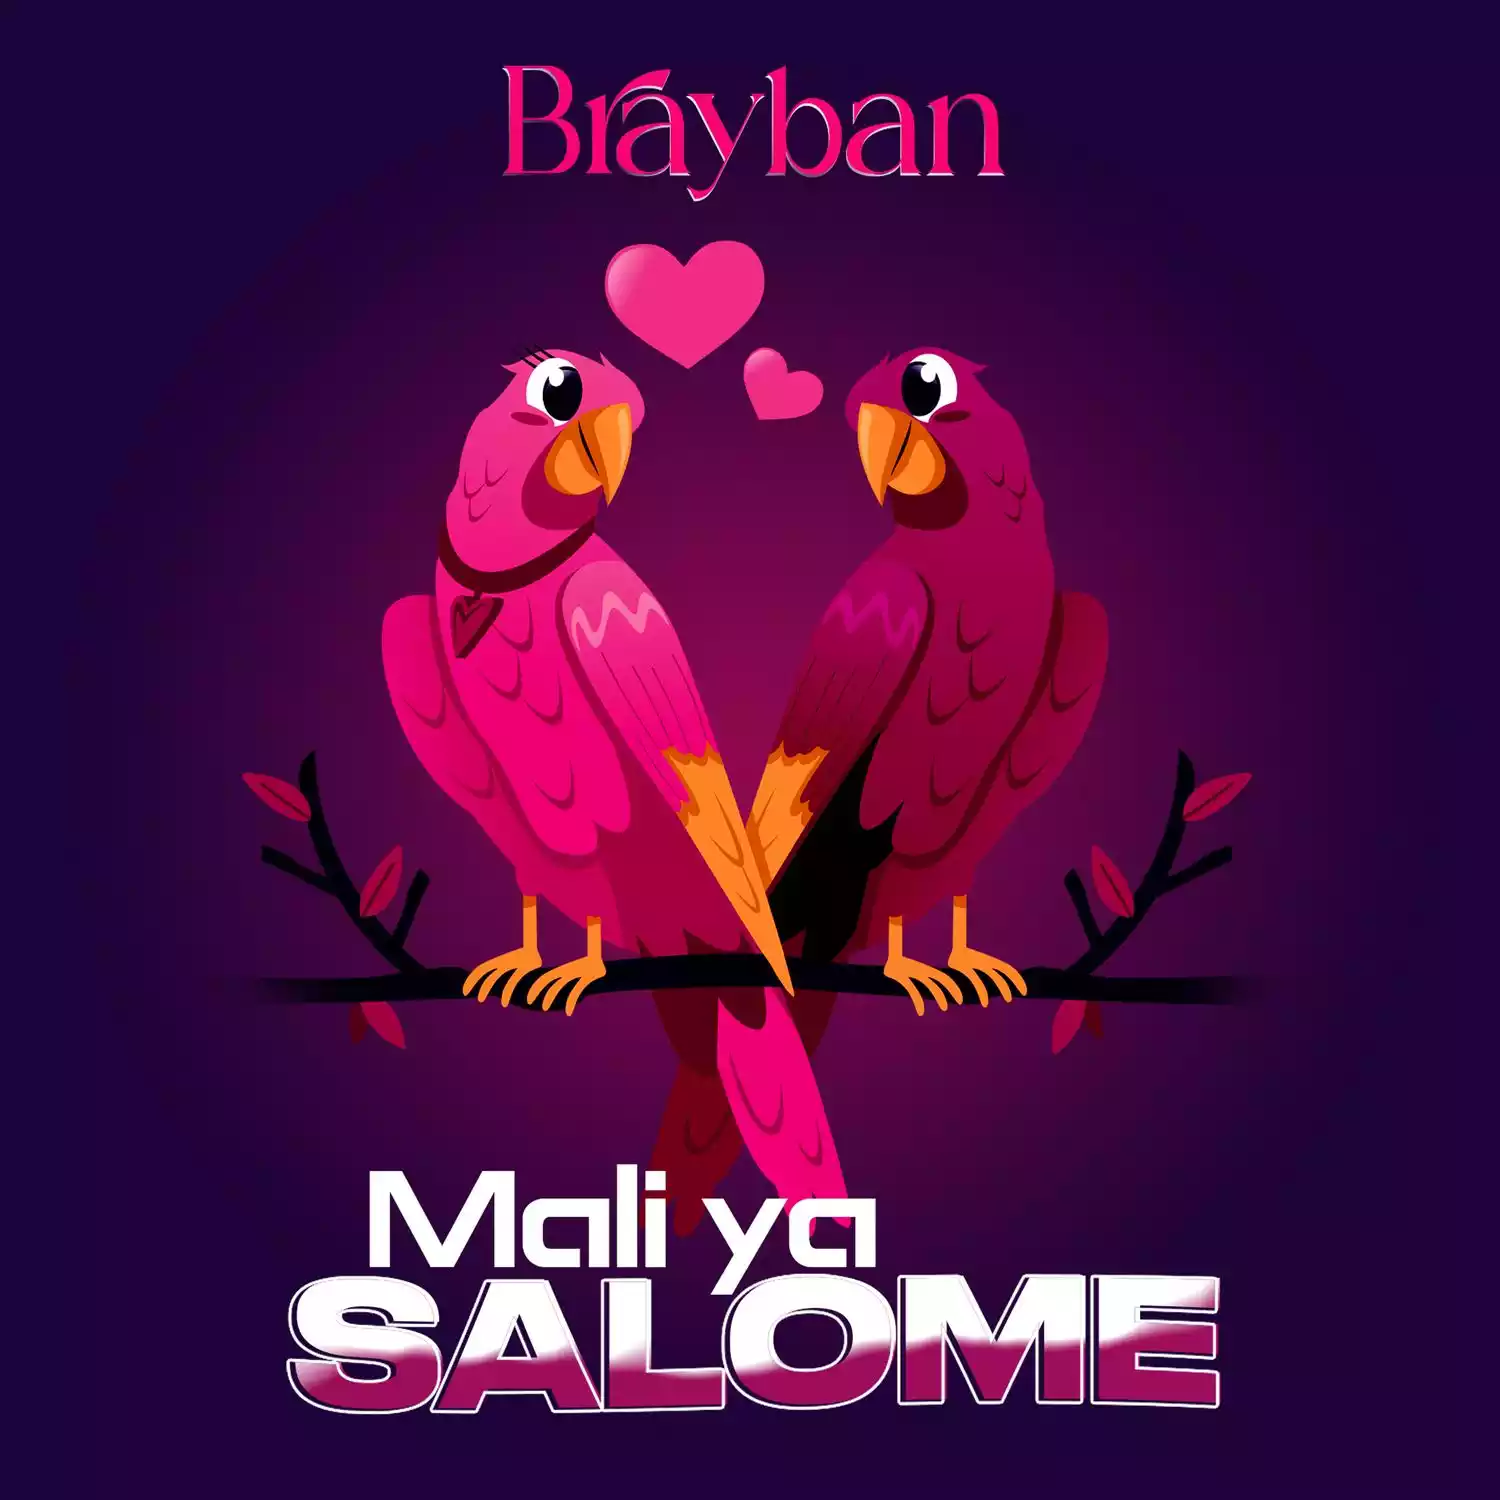 Brayban Mali ya Salome Mp3 Download